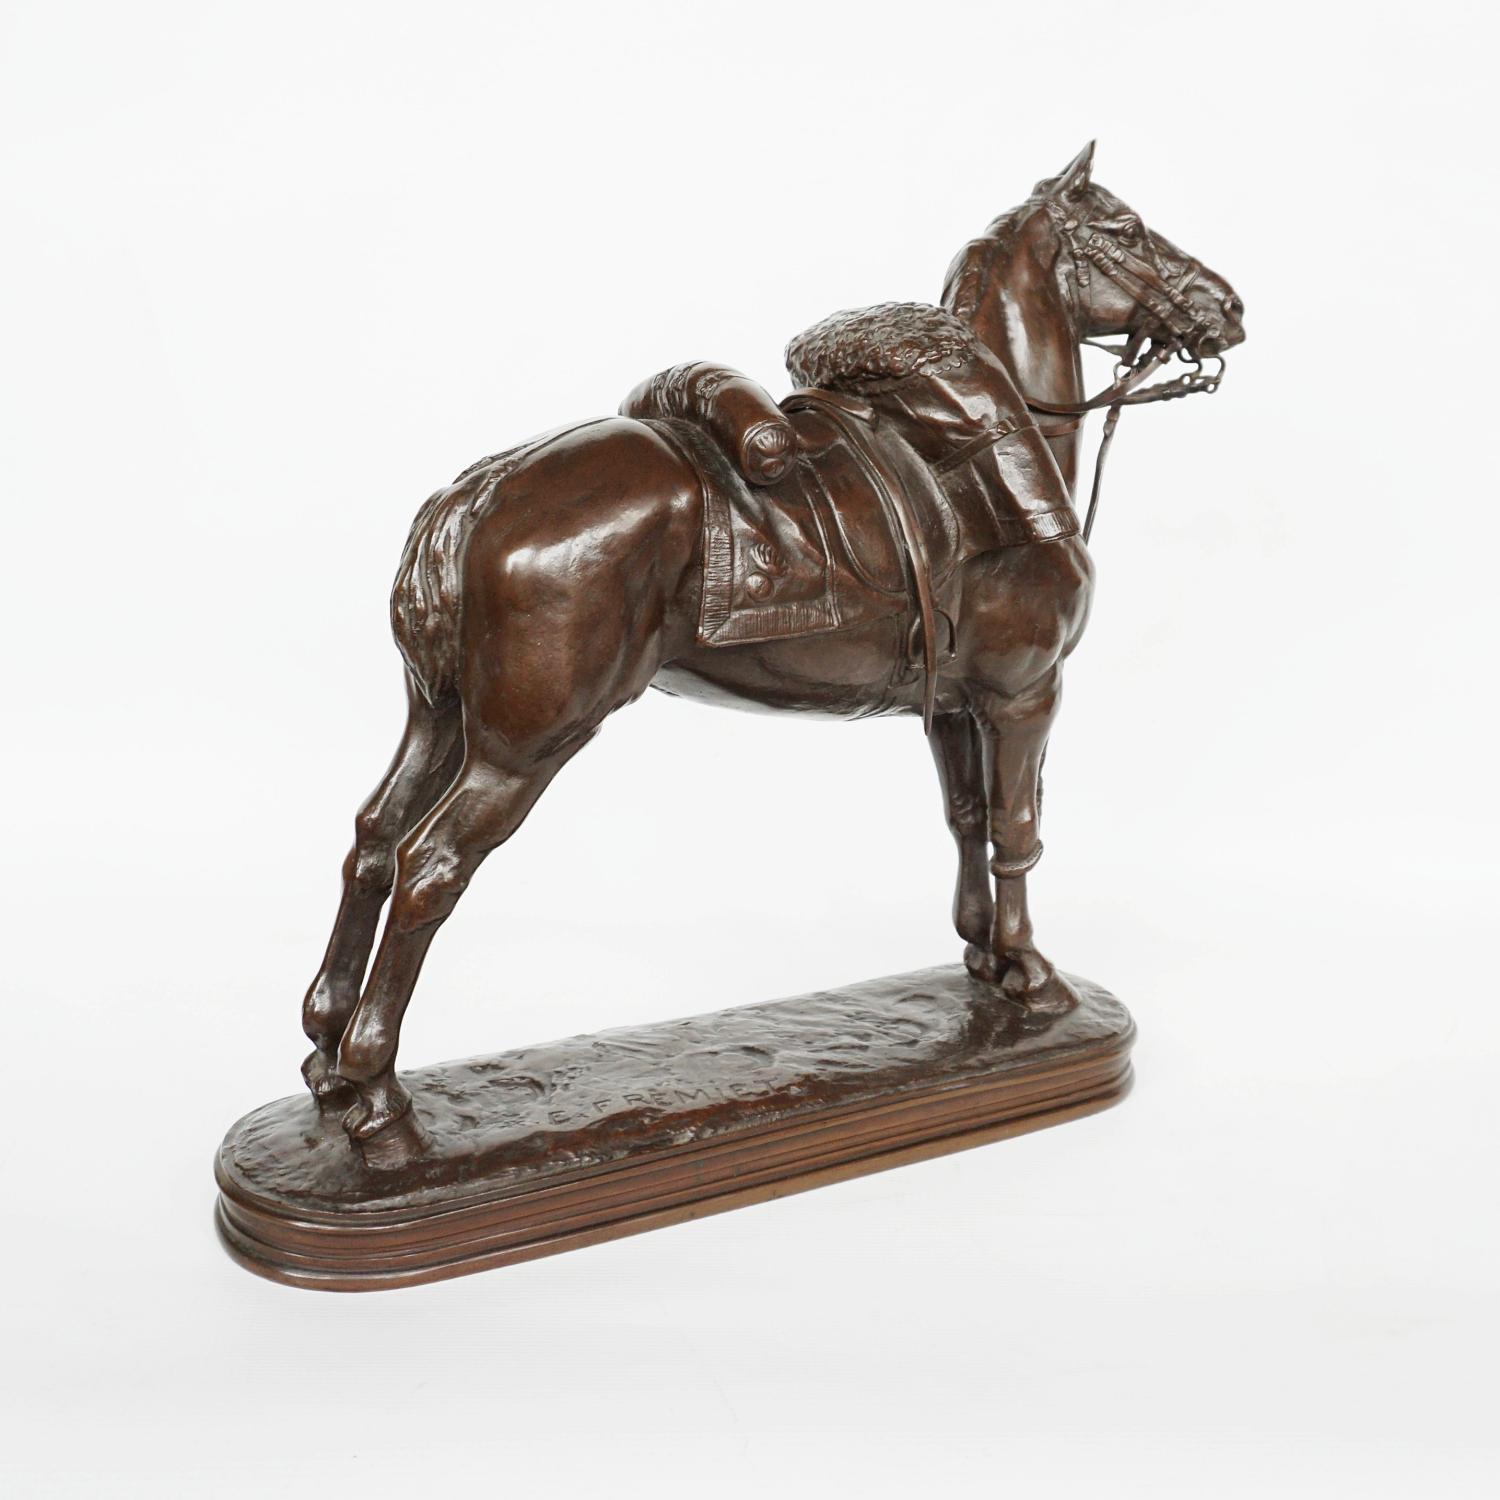 19th Century Emmanuel Fremiet 'War Horse' Bronze Sculpture, French, Circa 1860